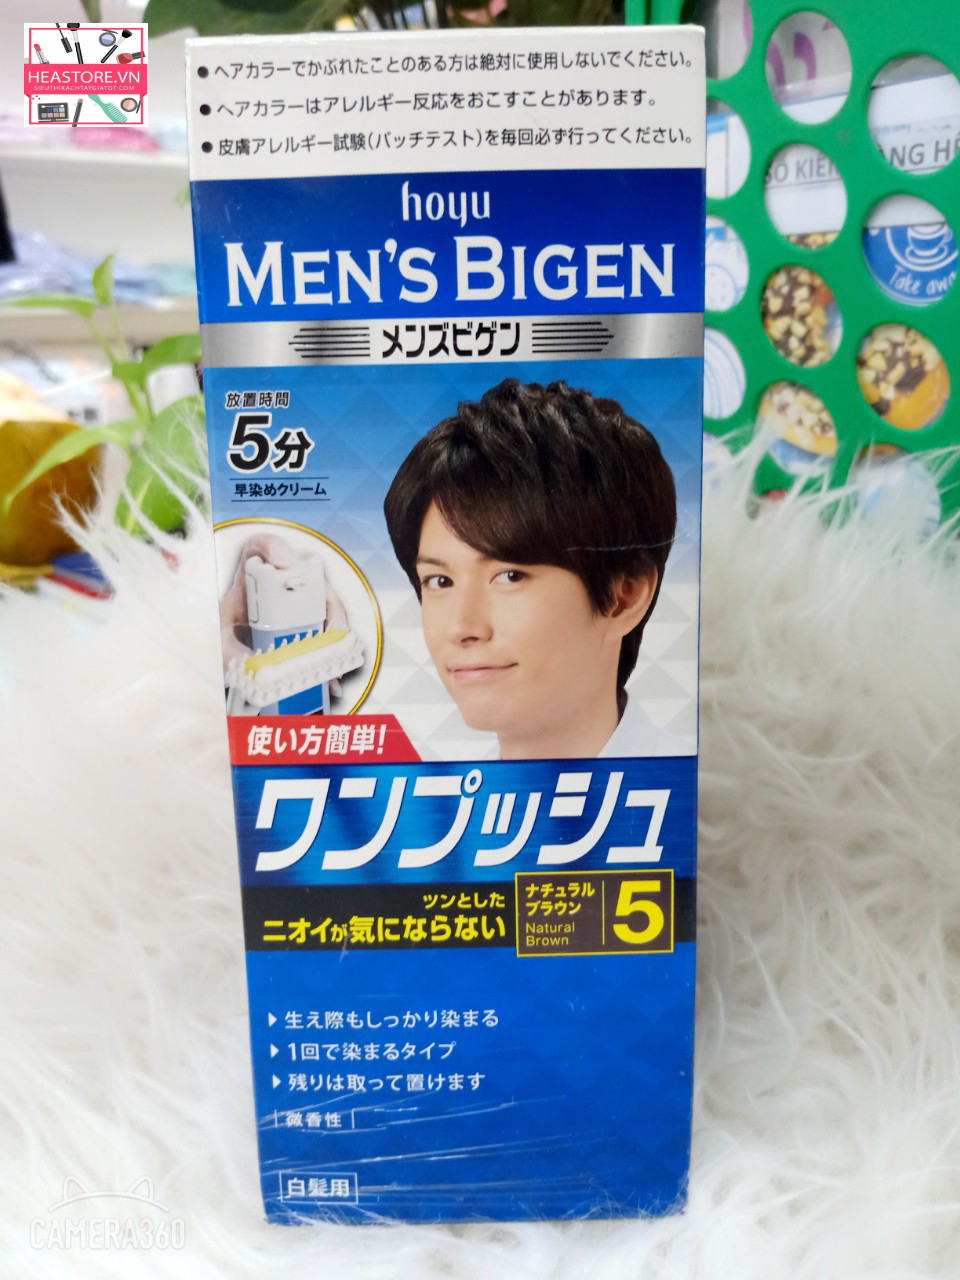 Thuốc nhuộm tóc Men'S Bigen Hoyu Nhật Bản dành cho nam